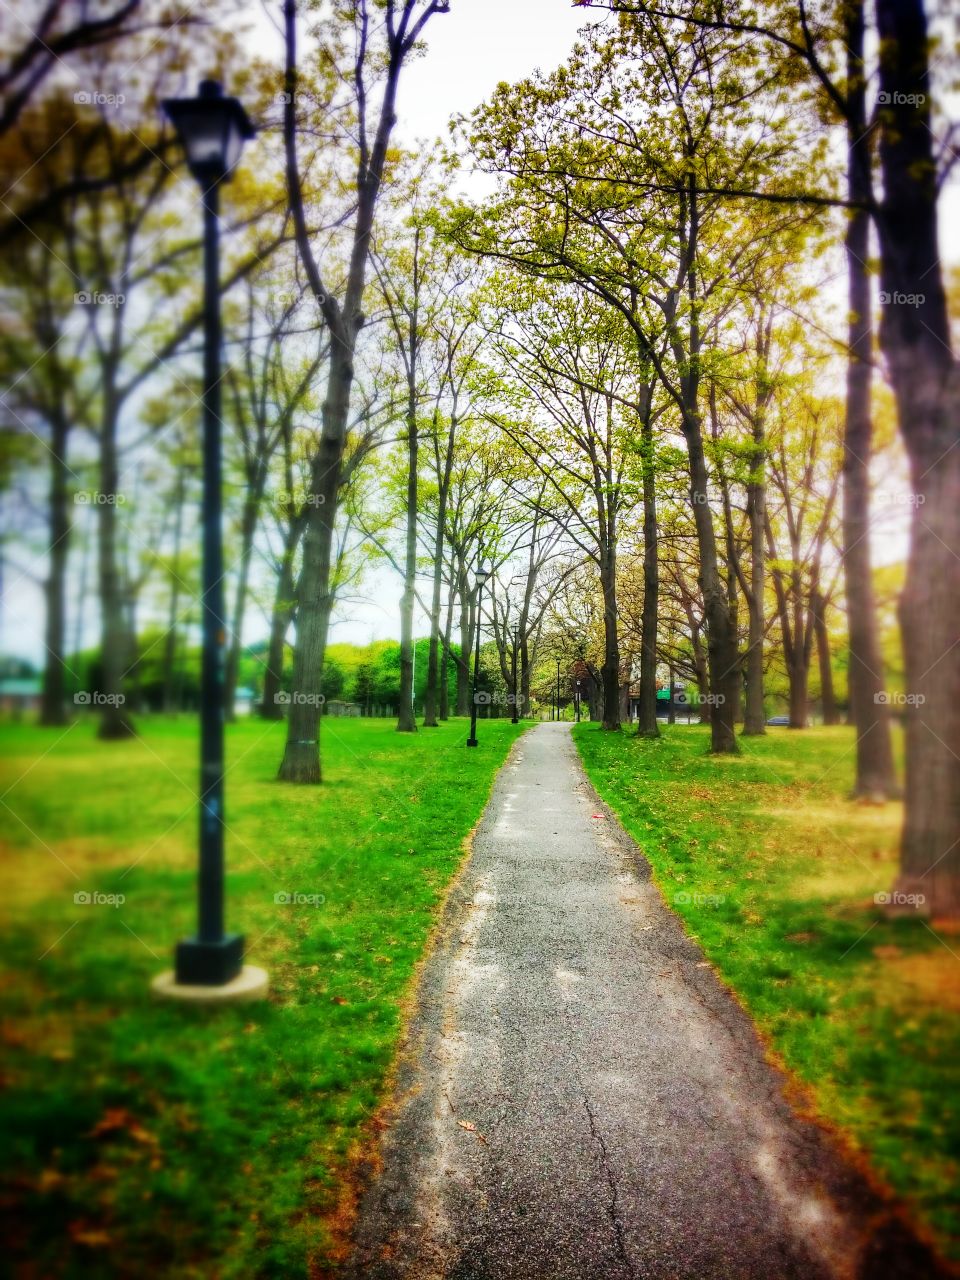 A Walk The Park. Deering Oaks